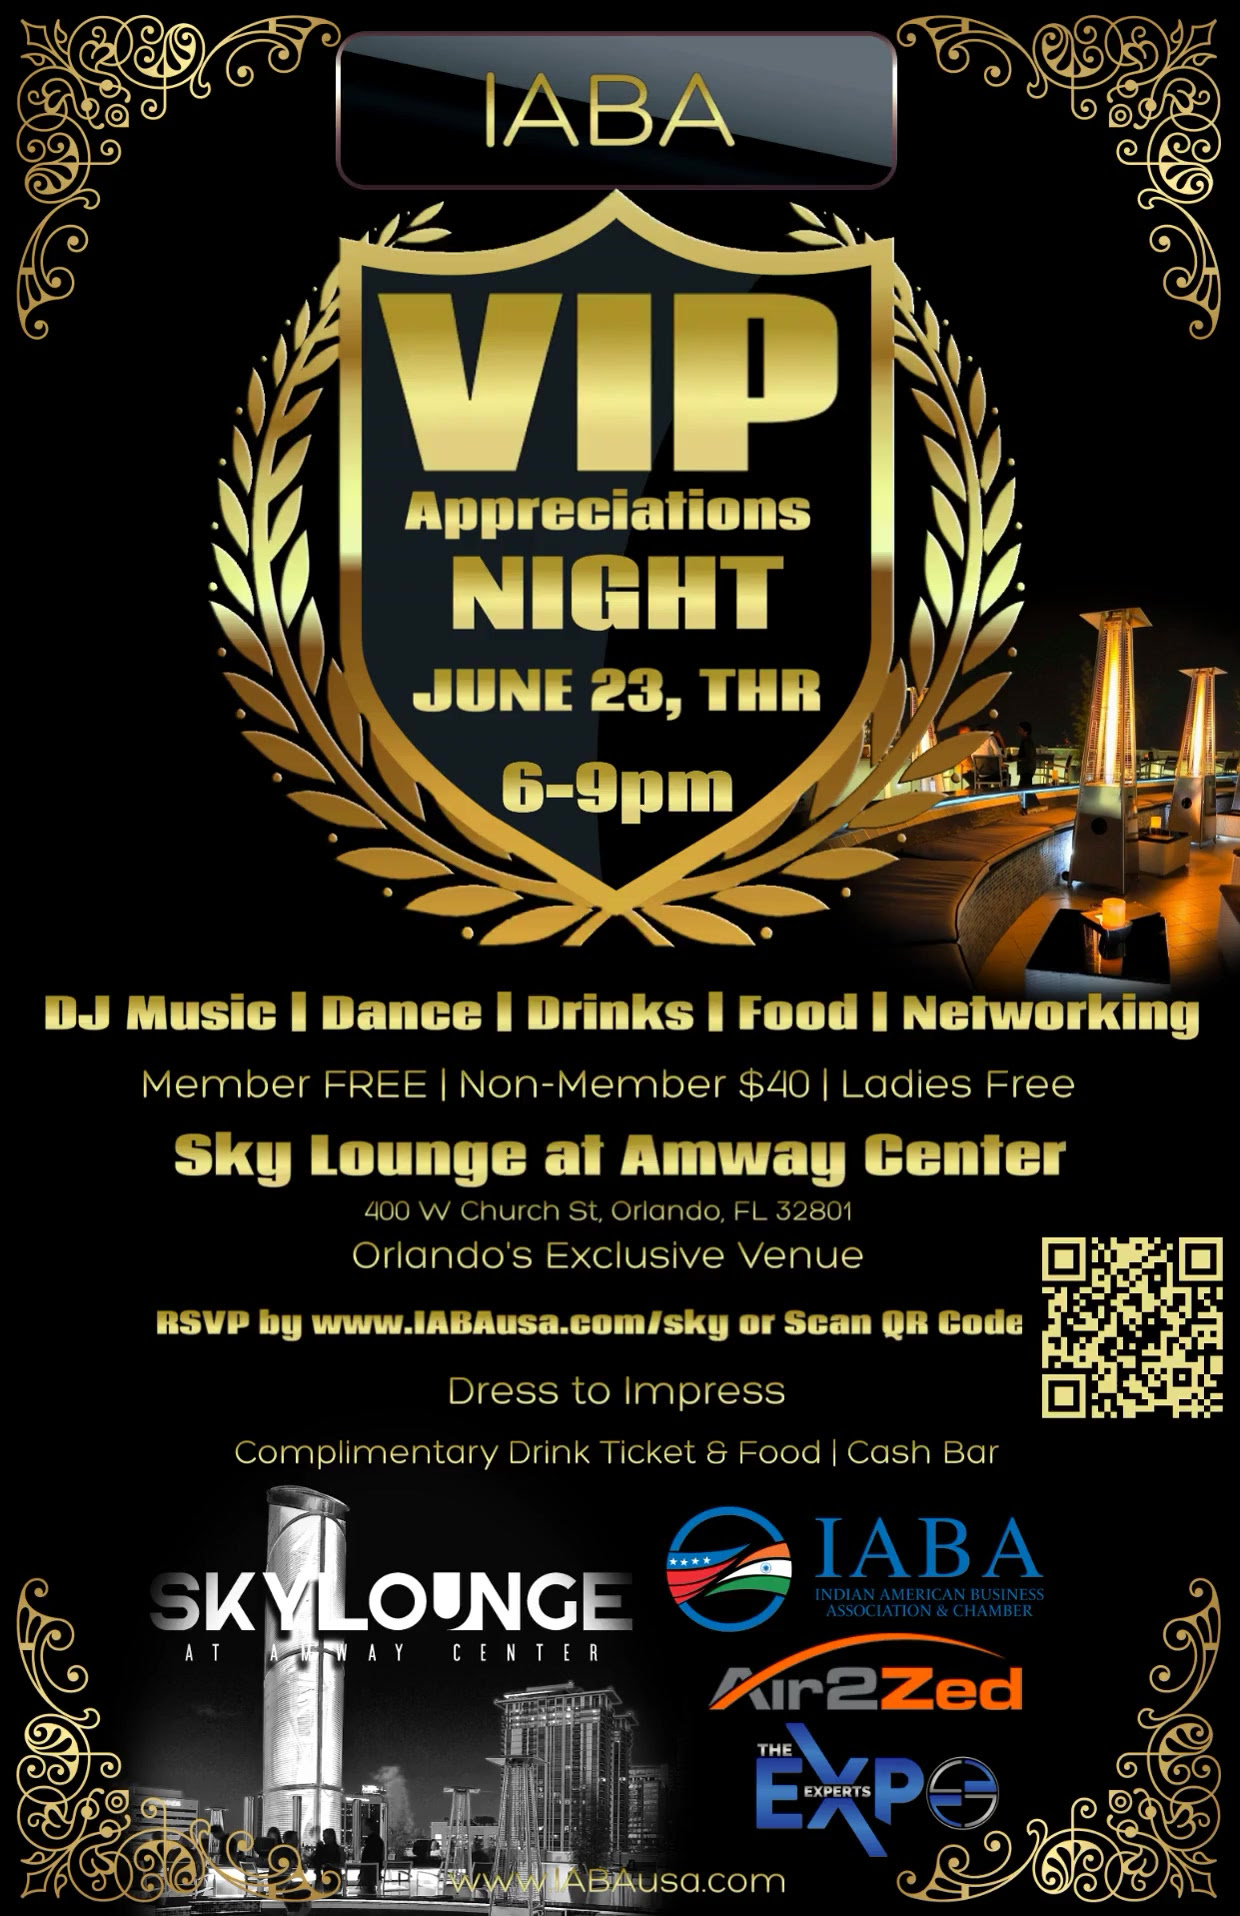 IABA VIP Night